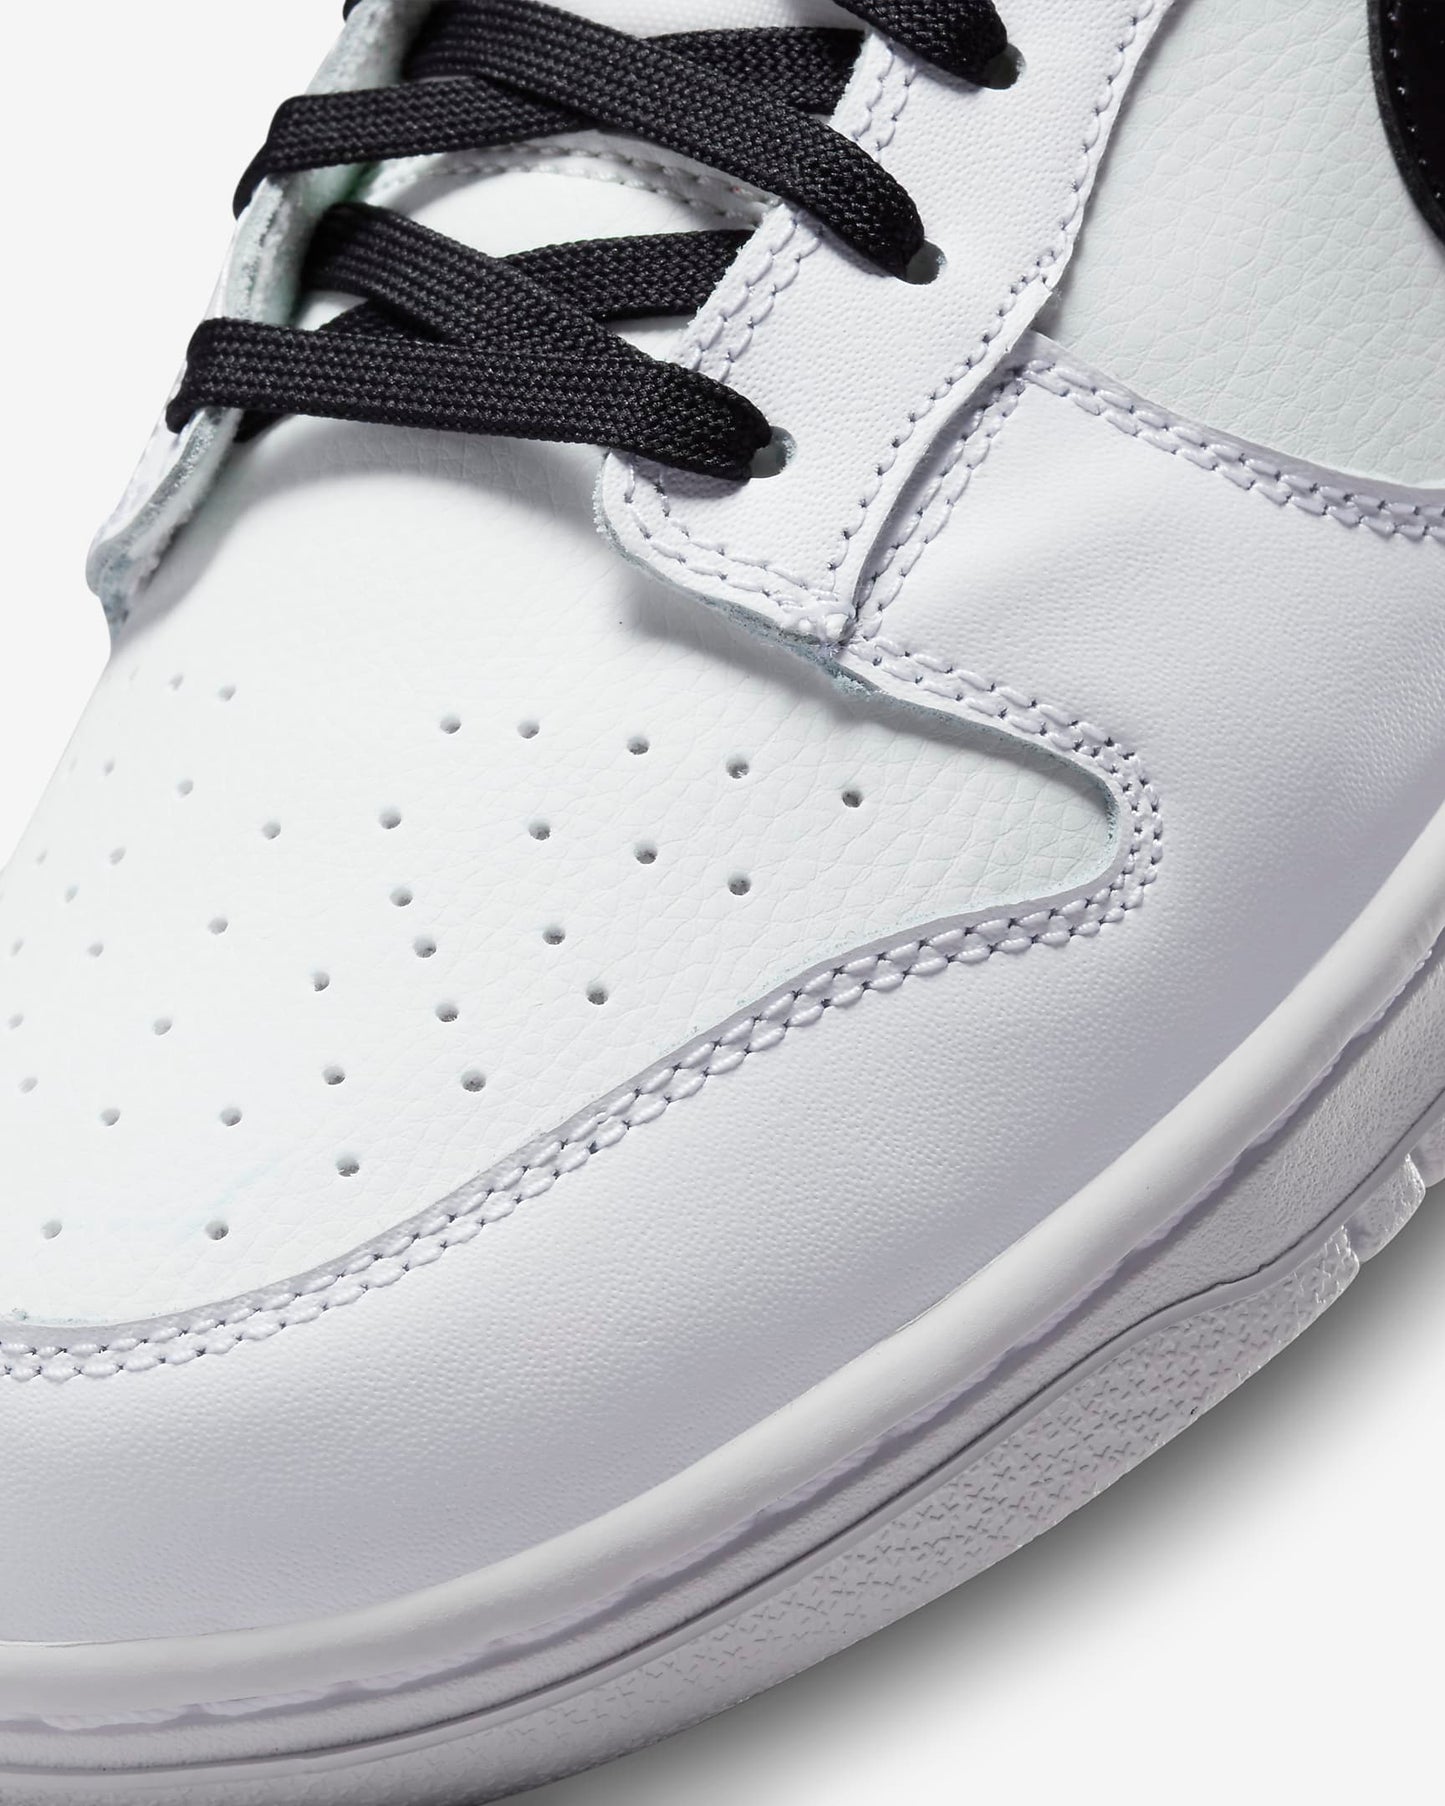 Nike Dunk Low Retro Men's Shoes, White/Summit White/Black